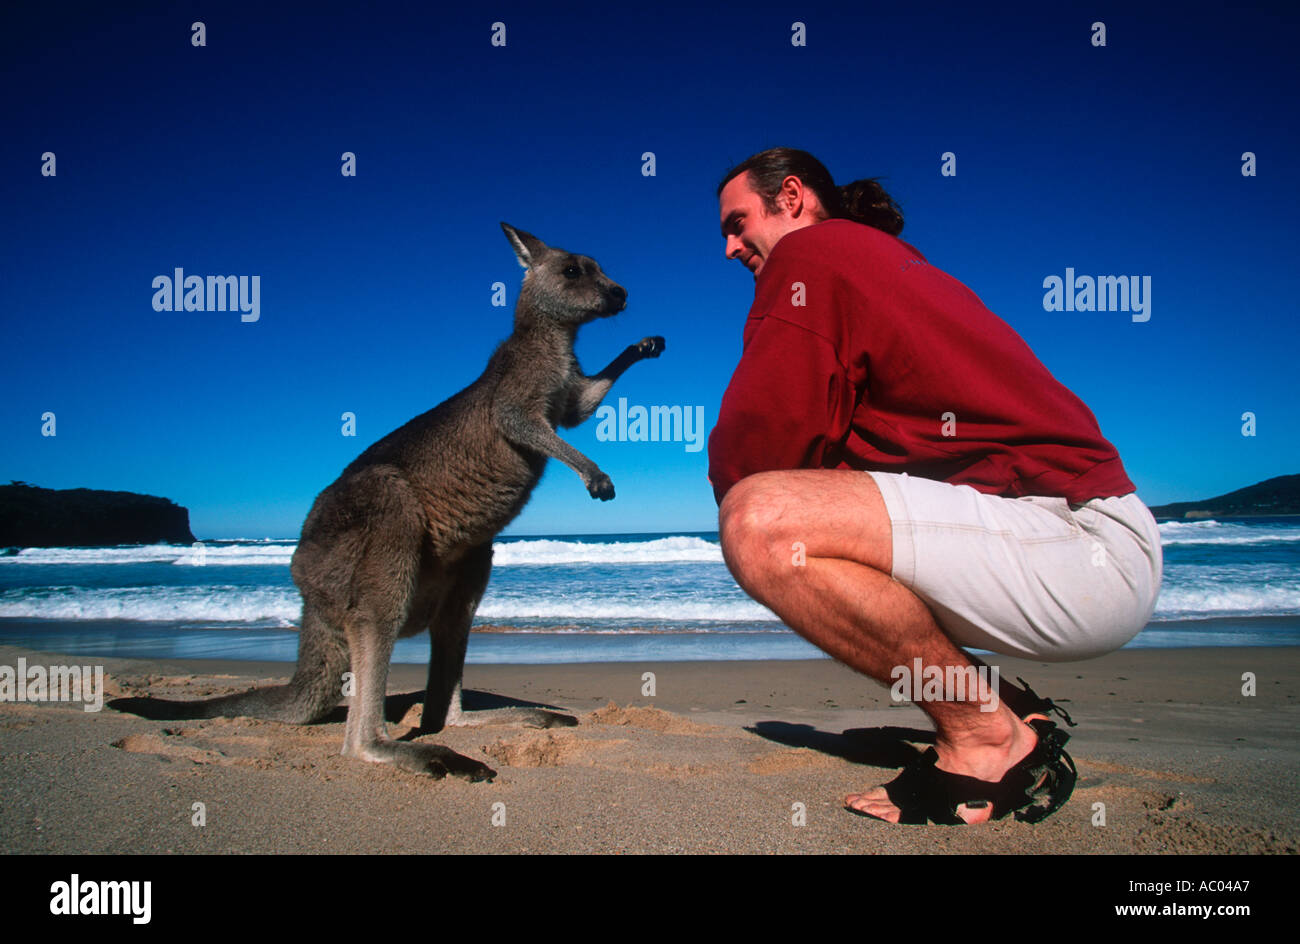 Les gens'répond à un modèle sur une plage de galets de kangourou Australie parution Banque D'Images